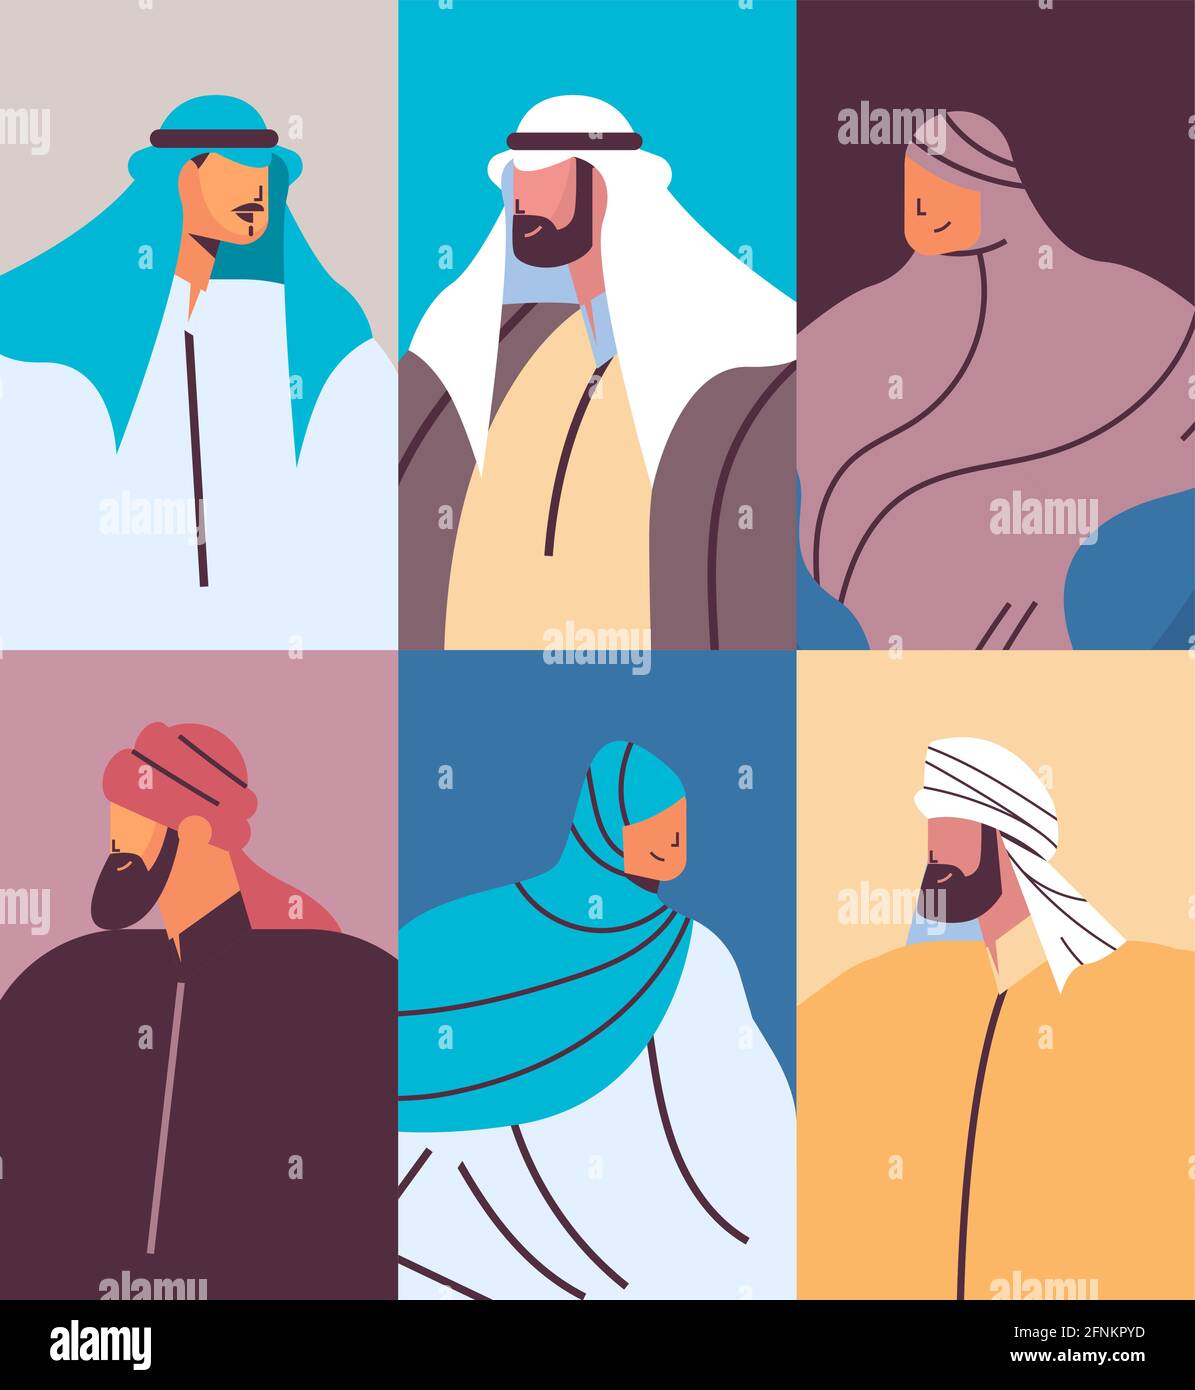 ensemble arabe personnes avatars collection hommes femmes personnages de dessin animé arabe en portrait traditionnel Illustration de Vecteur